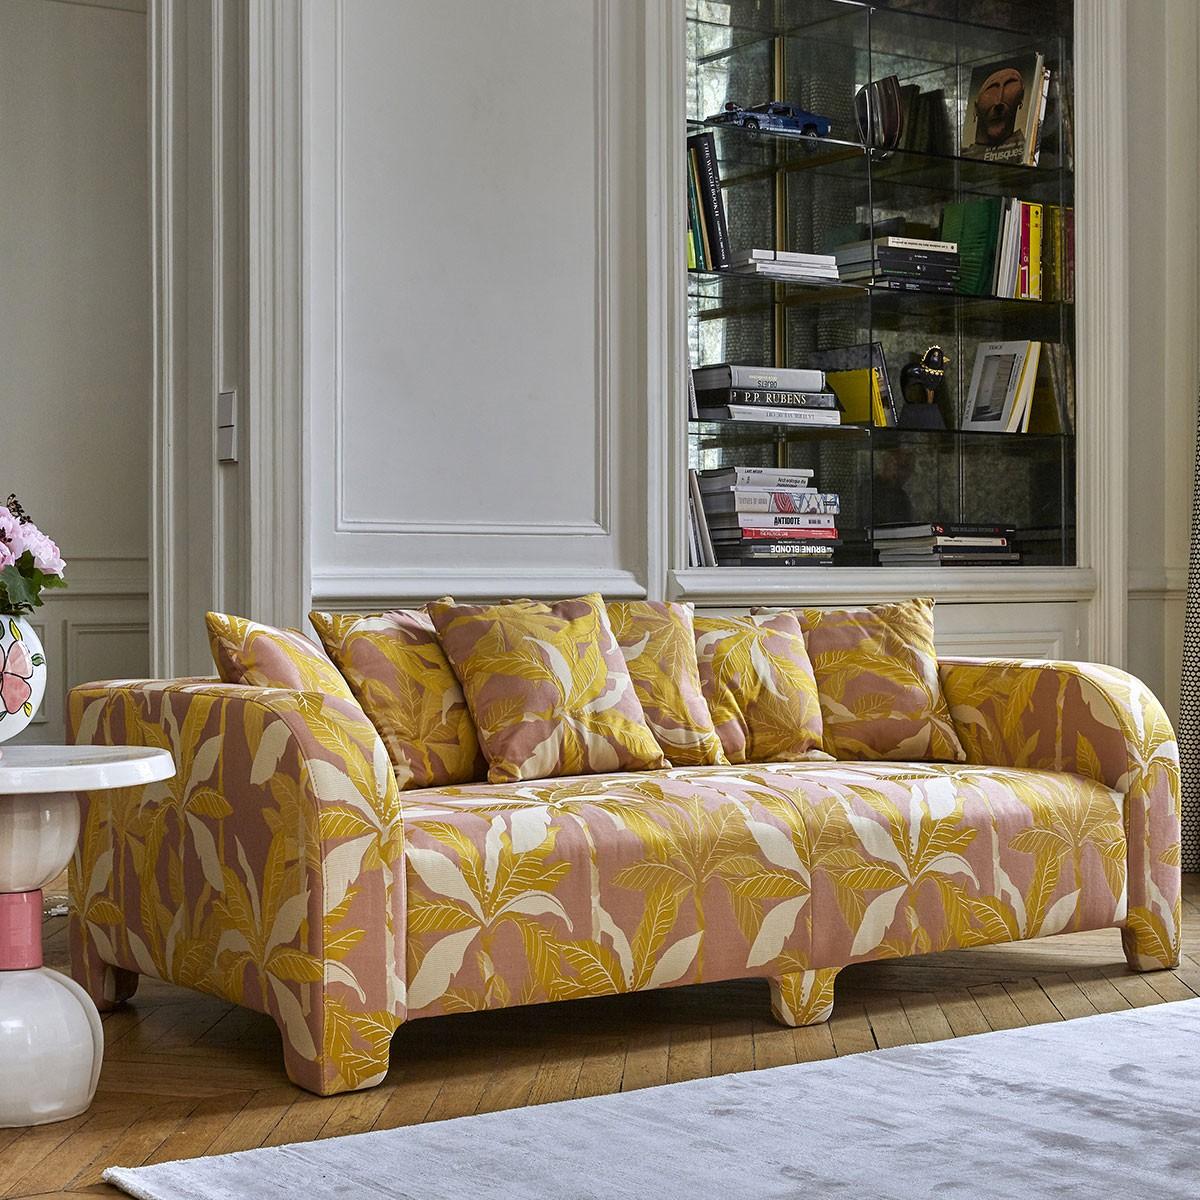 Popus Editions Graziella 4 Seater Sofa in Ciotello Venice Chenille Velvet Fabric In New Condition For Sale In Paris, FR